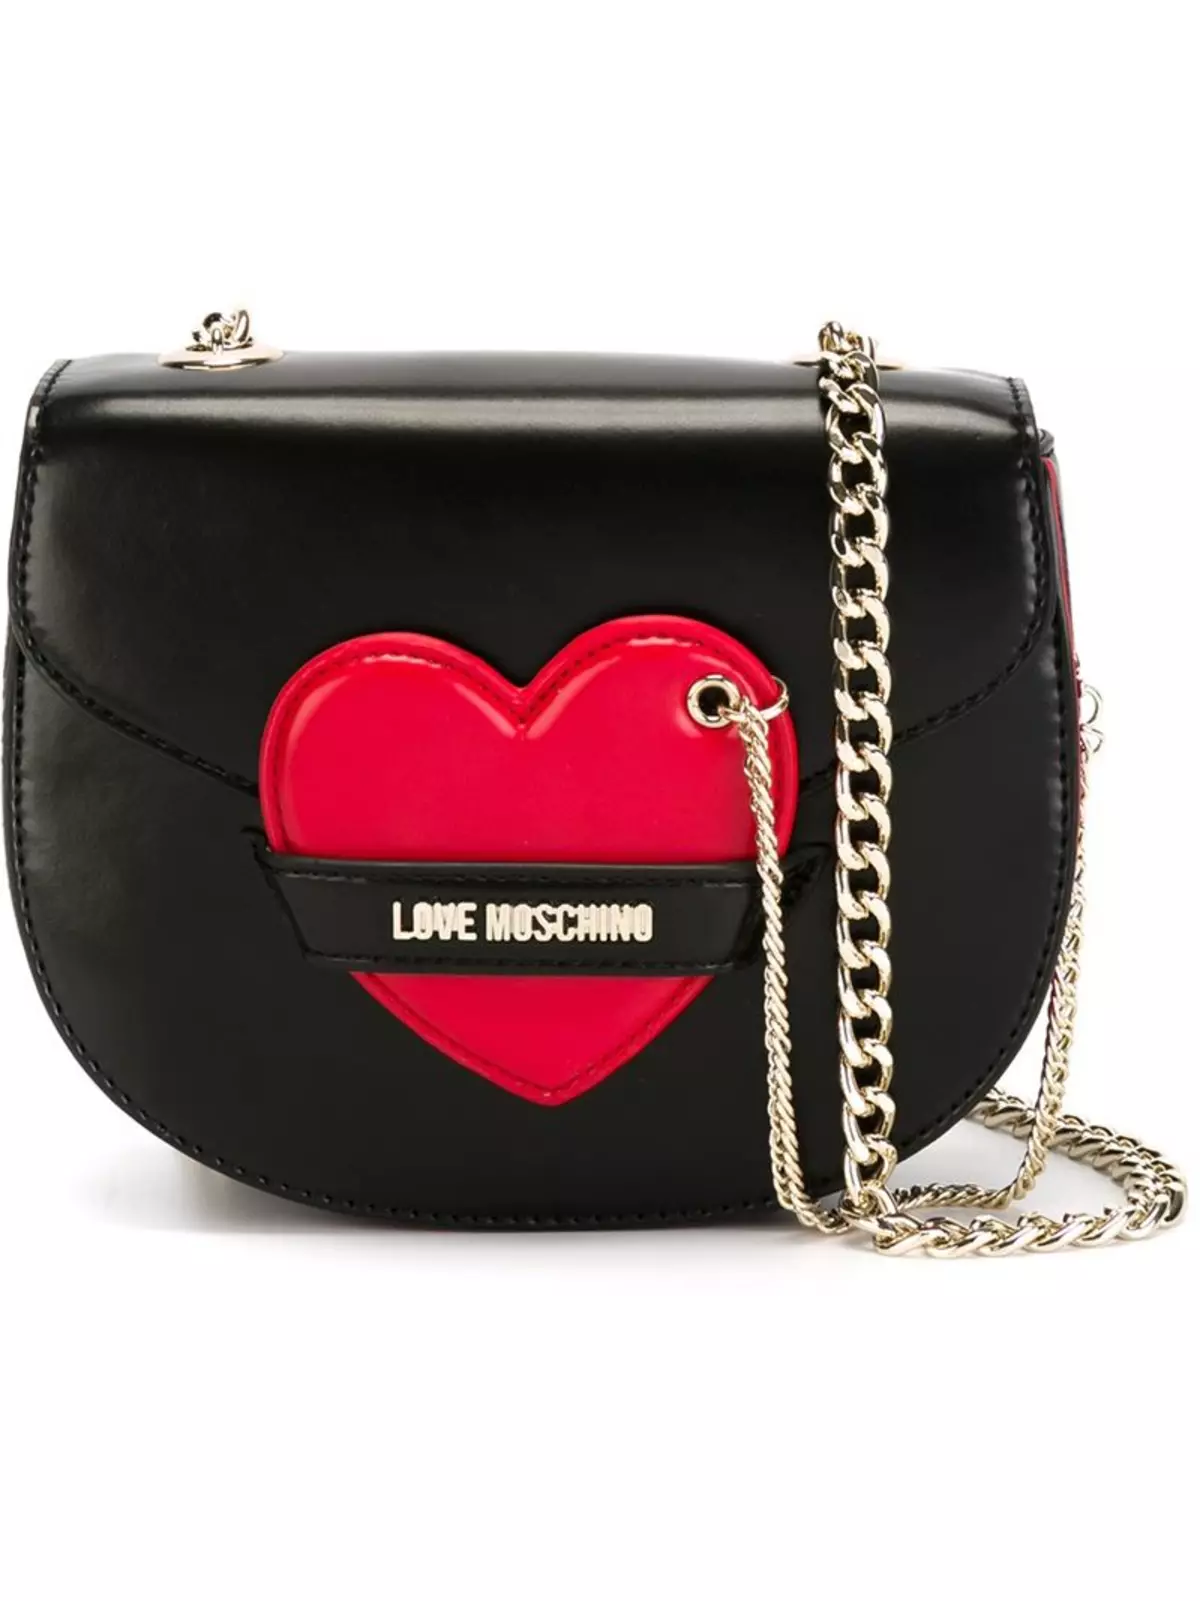 Сумки лове. Сумка Лове Москино черная. Red Shoulder Bag Love Moschino Chain. Red Bag Love Moschino Chain. Moschino Heart Bag.